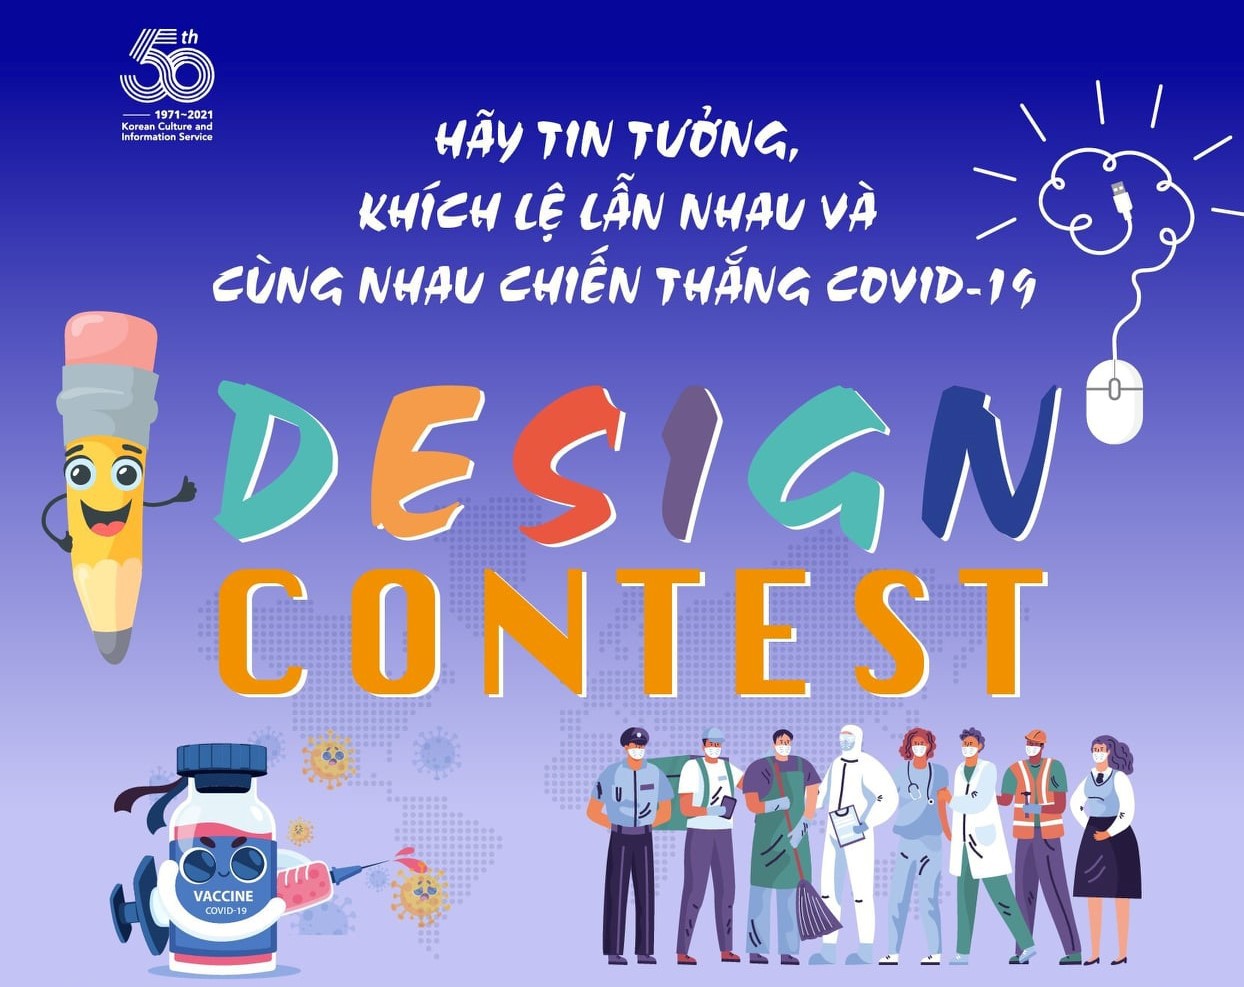 Cuộc thi thiết kế của Trung tâm Văn hóa Hàn Quốc với chủ đề - Hãy tin tưởng, khích lệ lẫn nhau và cùng nhau chiến thắng Covid